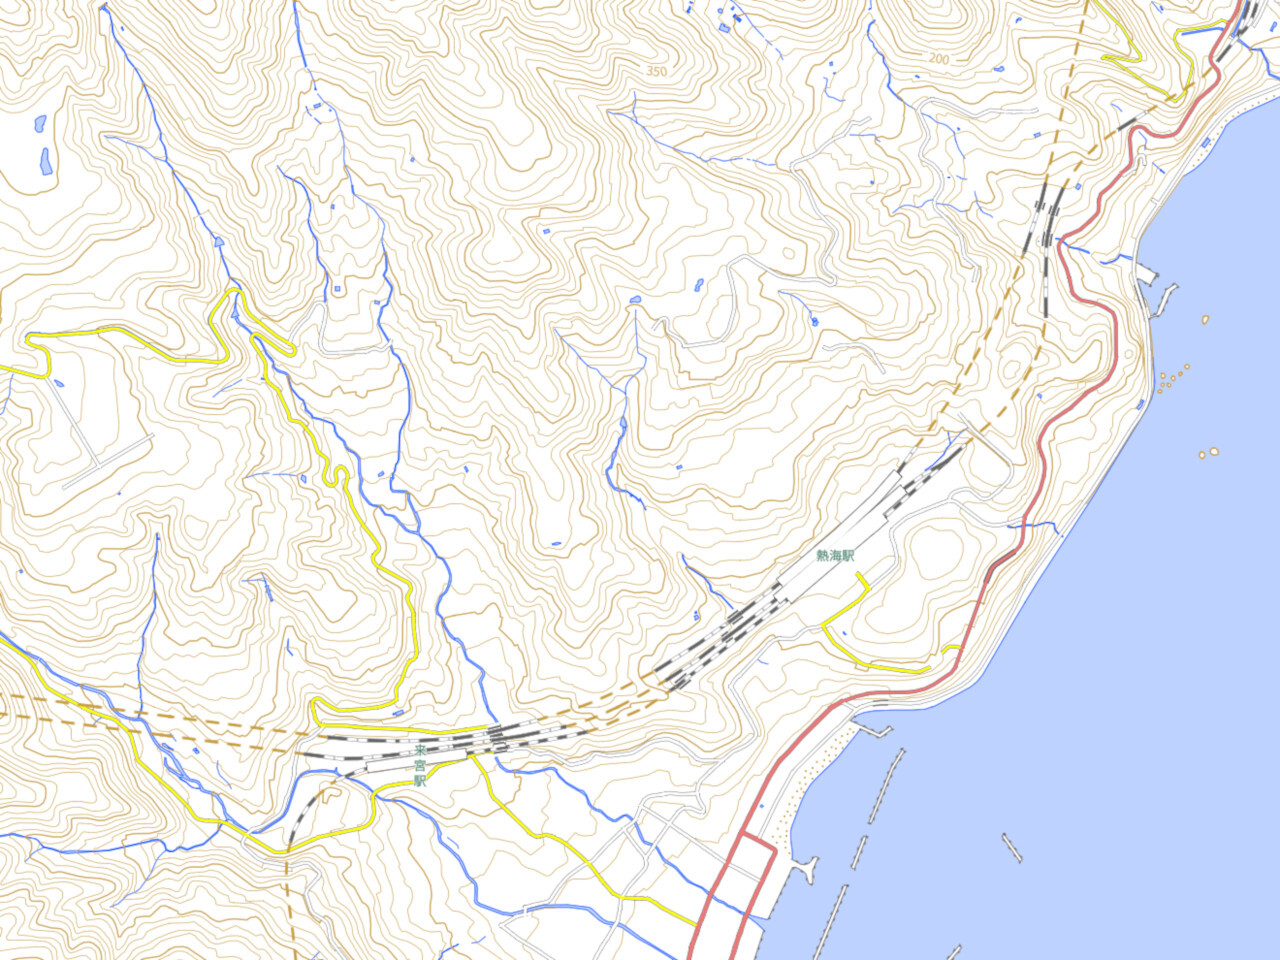 熱海駅周辺の地図。大きくカーブを描いていることがわかります（国土地理院「地理院地図Vector」の標準地図を基に作成）